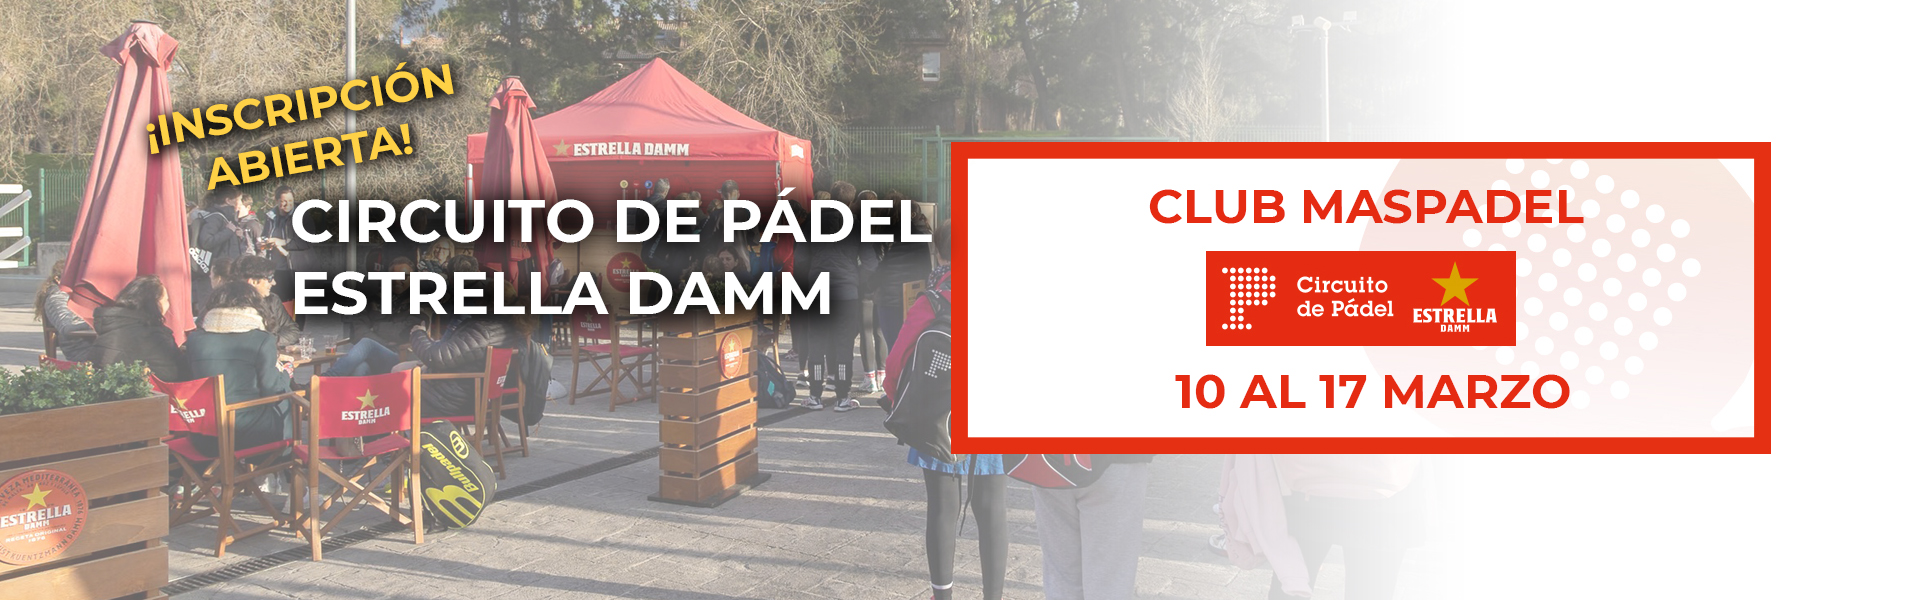 CIRCUITO DE PÁDEL ESTRELLA DAMM - CLUB MASPADEL